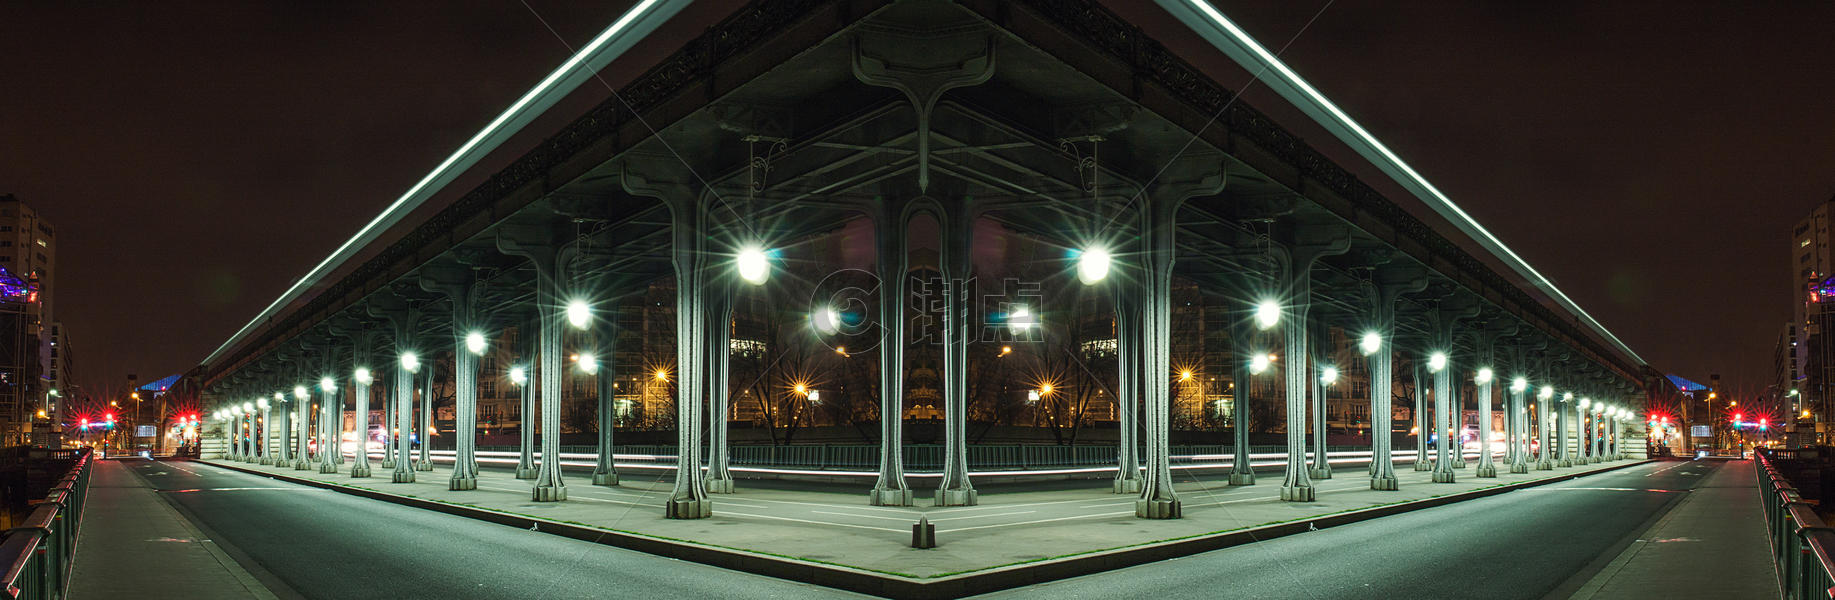 都市夜景图片素材免费下载